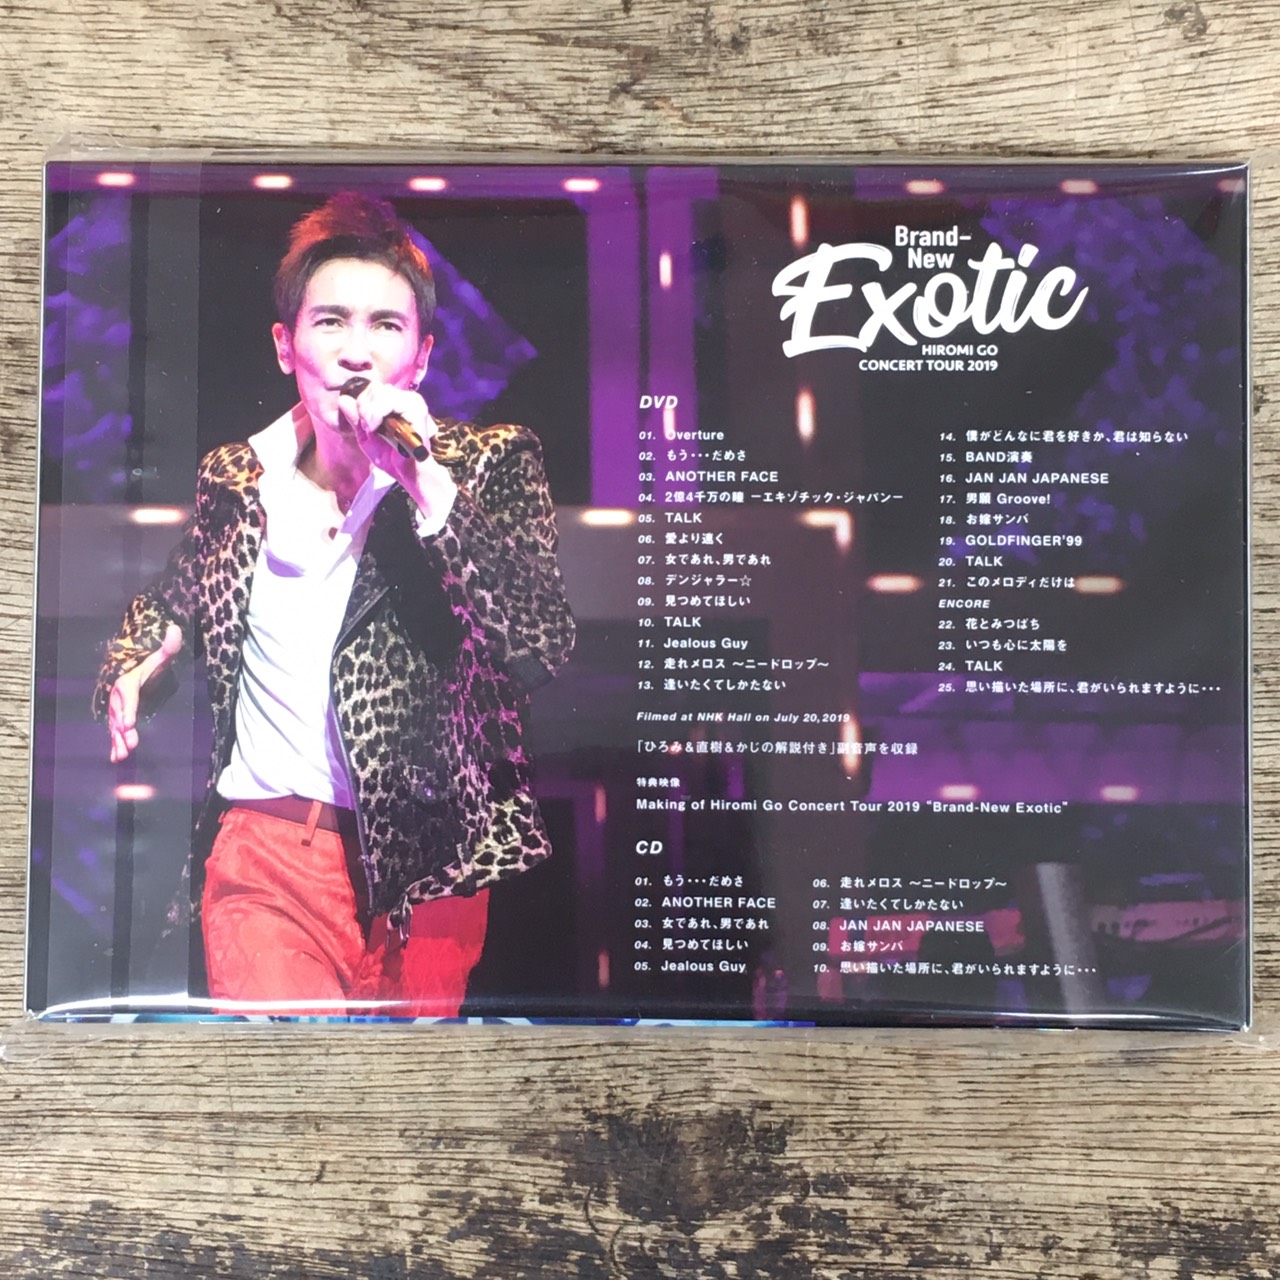 3000円 新発売 BD Hiromi Go Concert Tour 2019 Brand-New Exotic Blu-ray CD 郷ひろみ SRXL-224